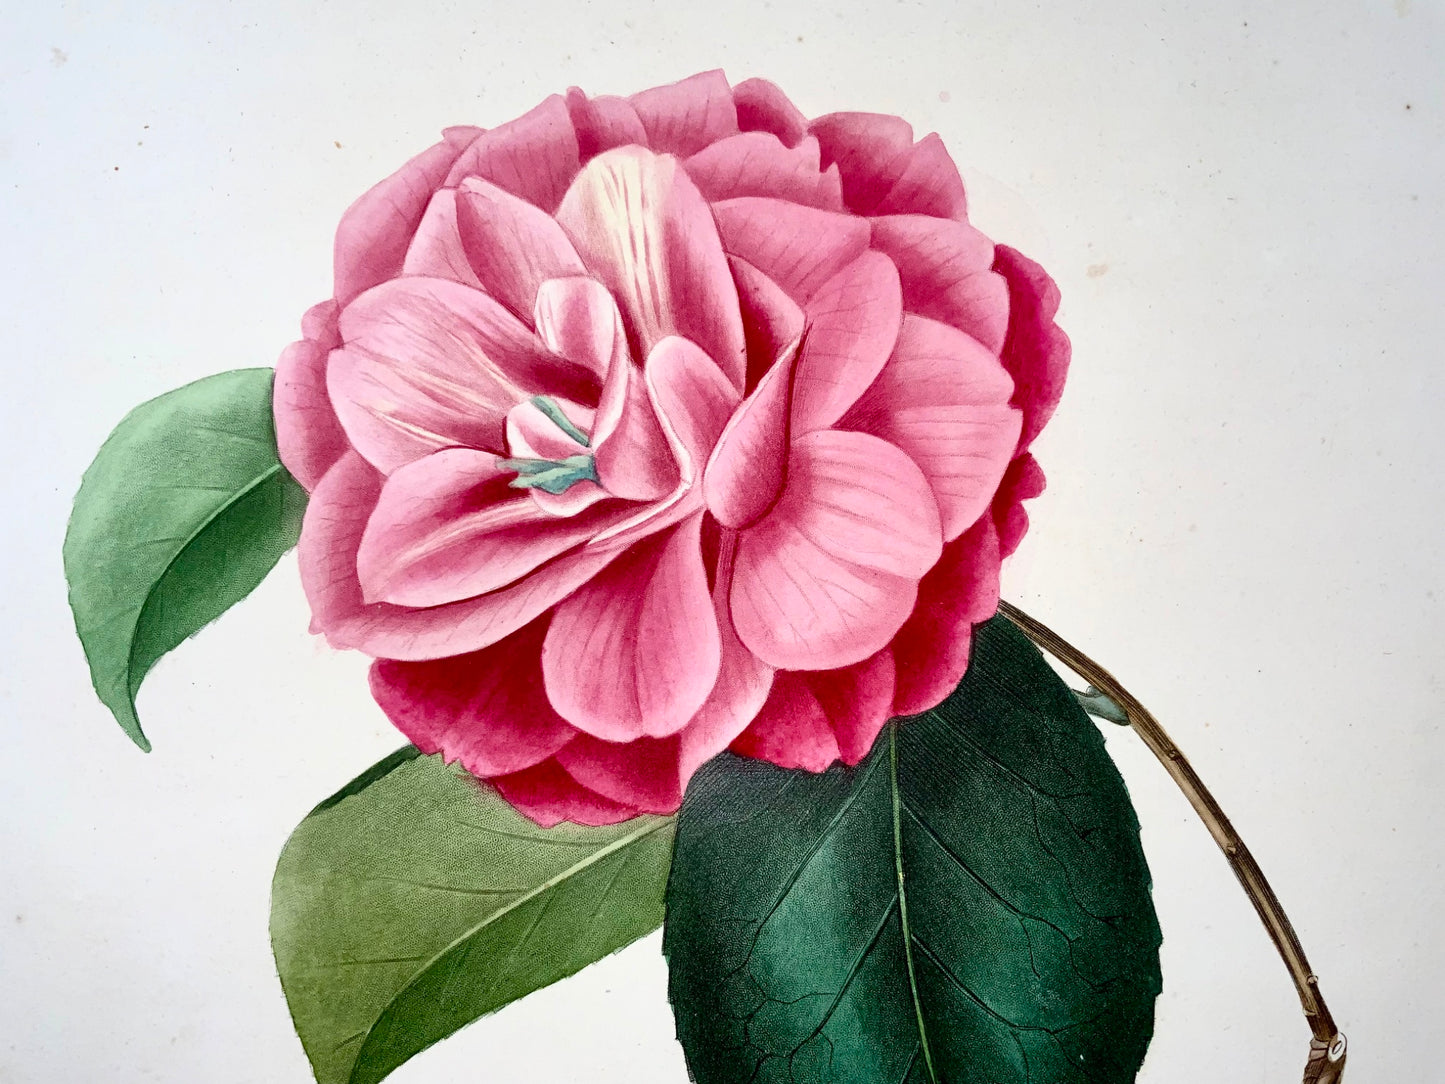 1841 Camellia Venus [Camellia], disegnata da JJ Jung, incisa da Oudet, Berlèse, fiori, botanica